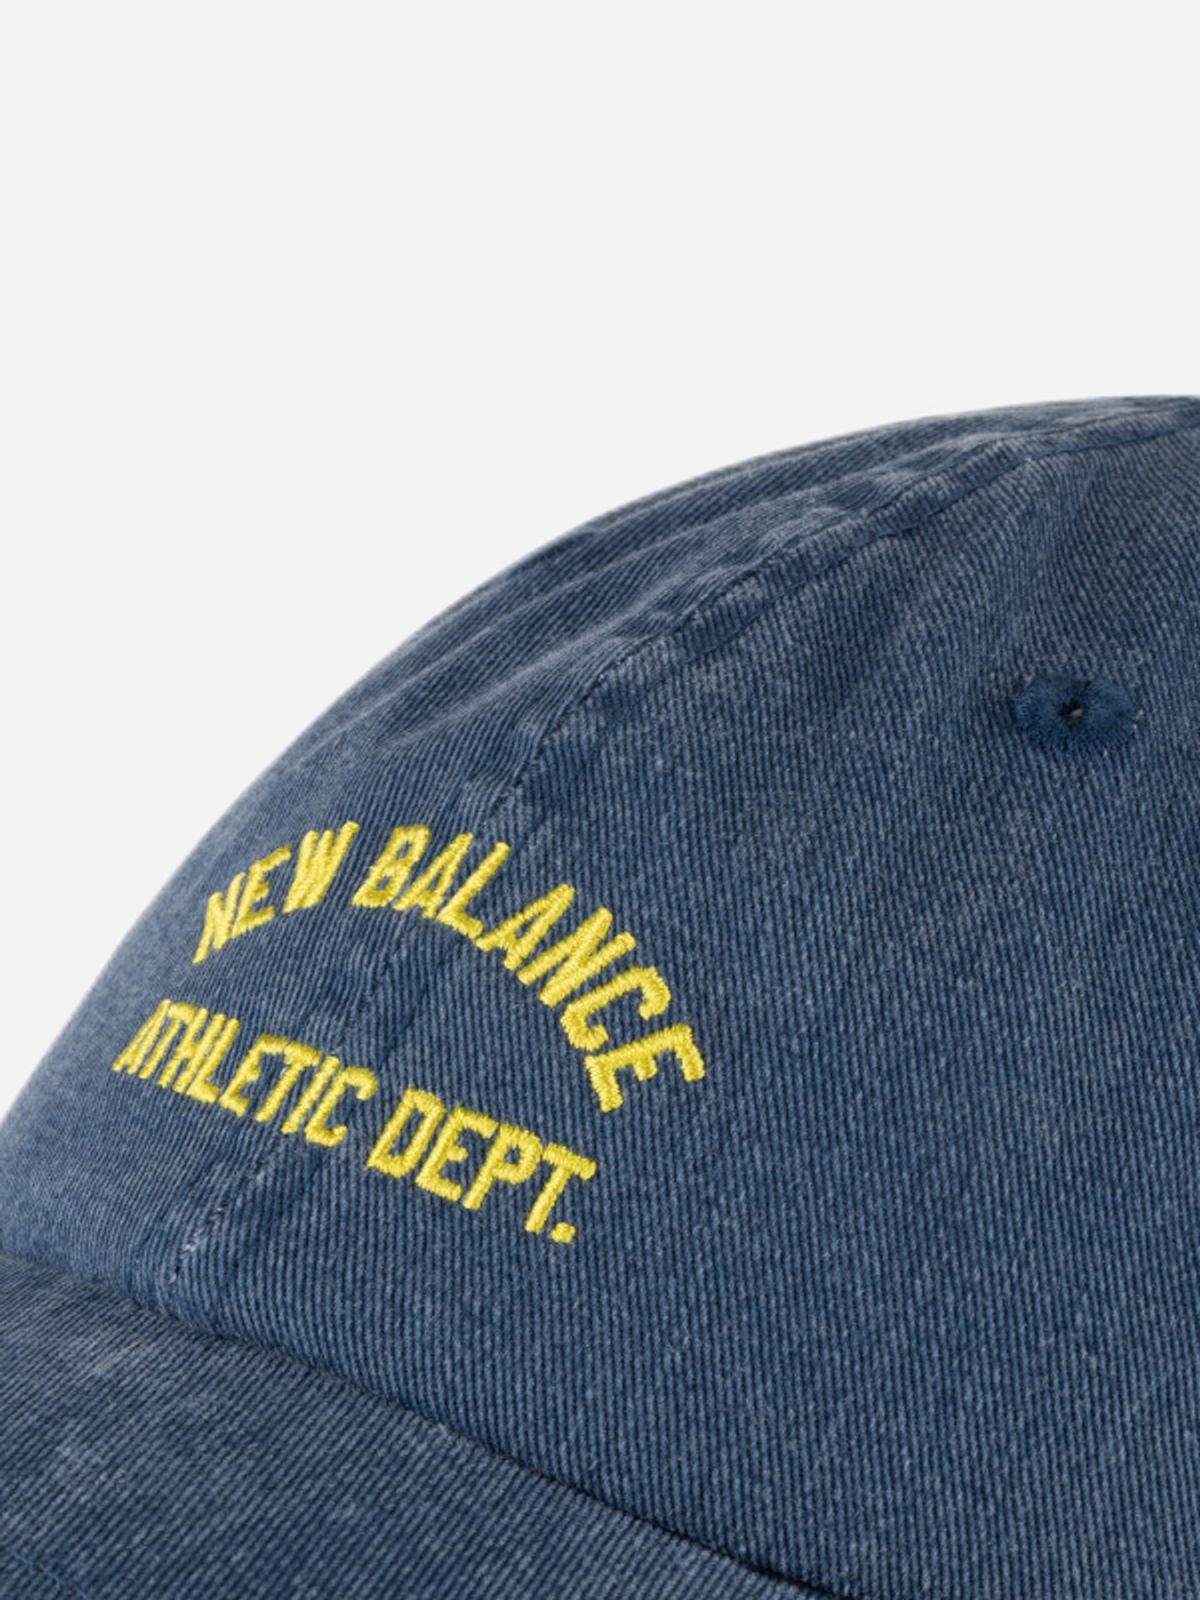  כובע מצחייה עם לוגו / גברים של NEW BALANCE